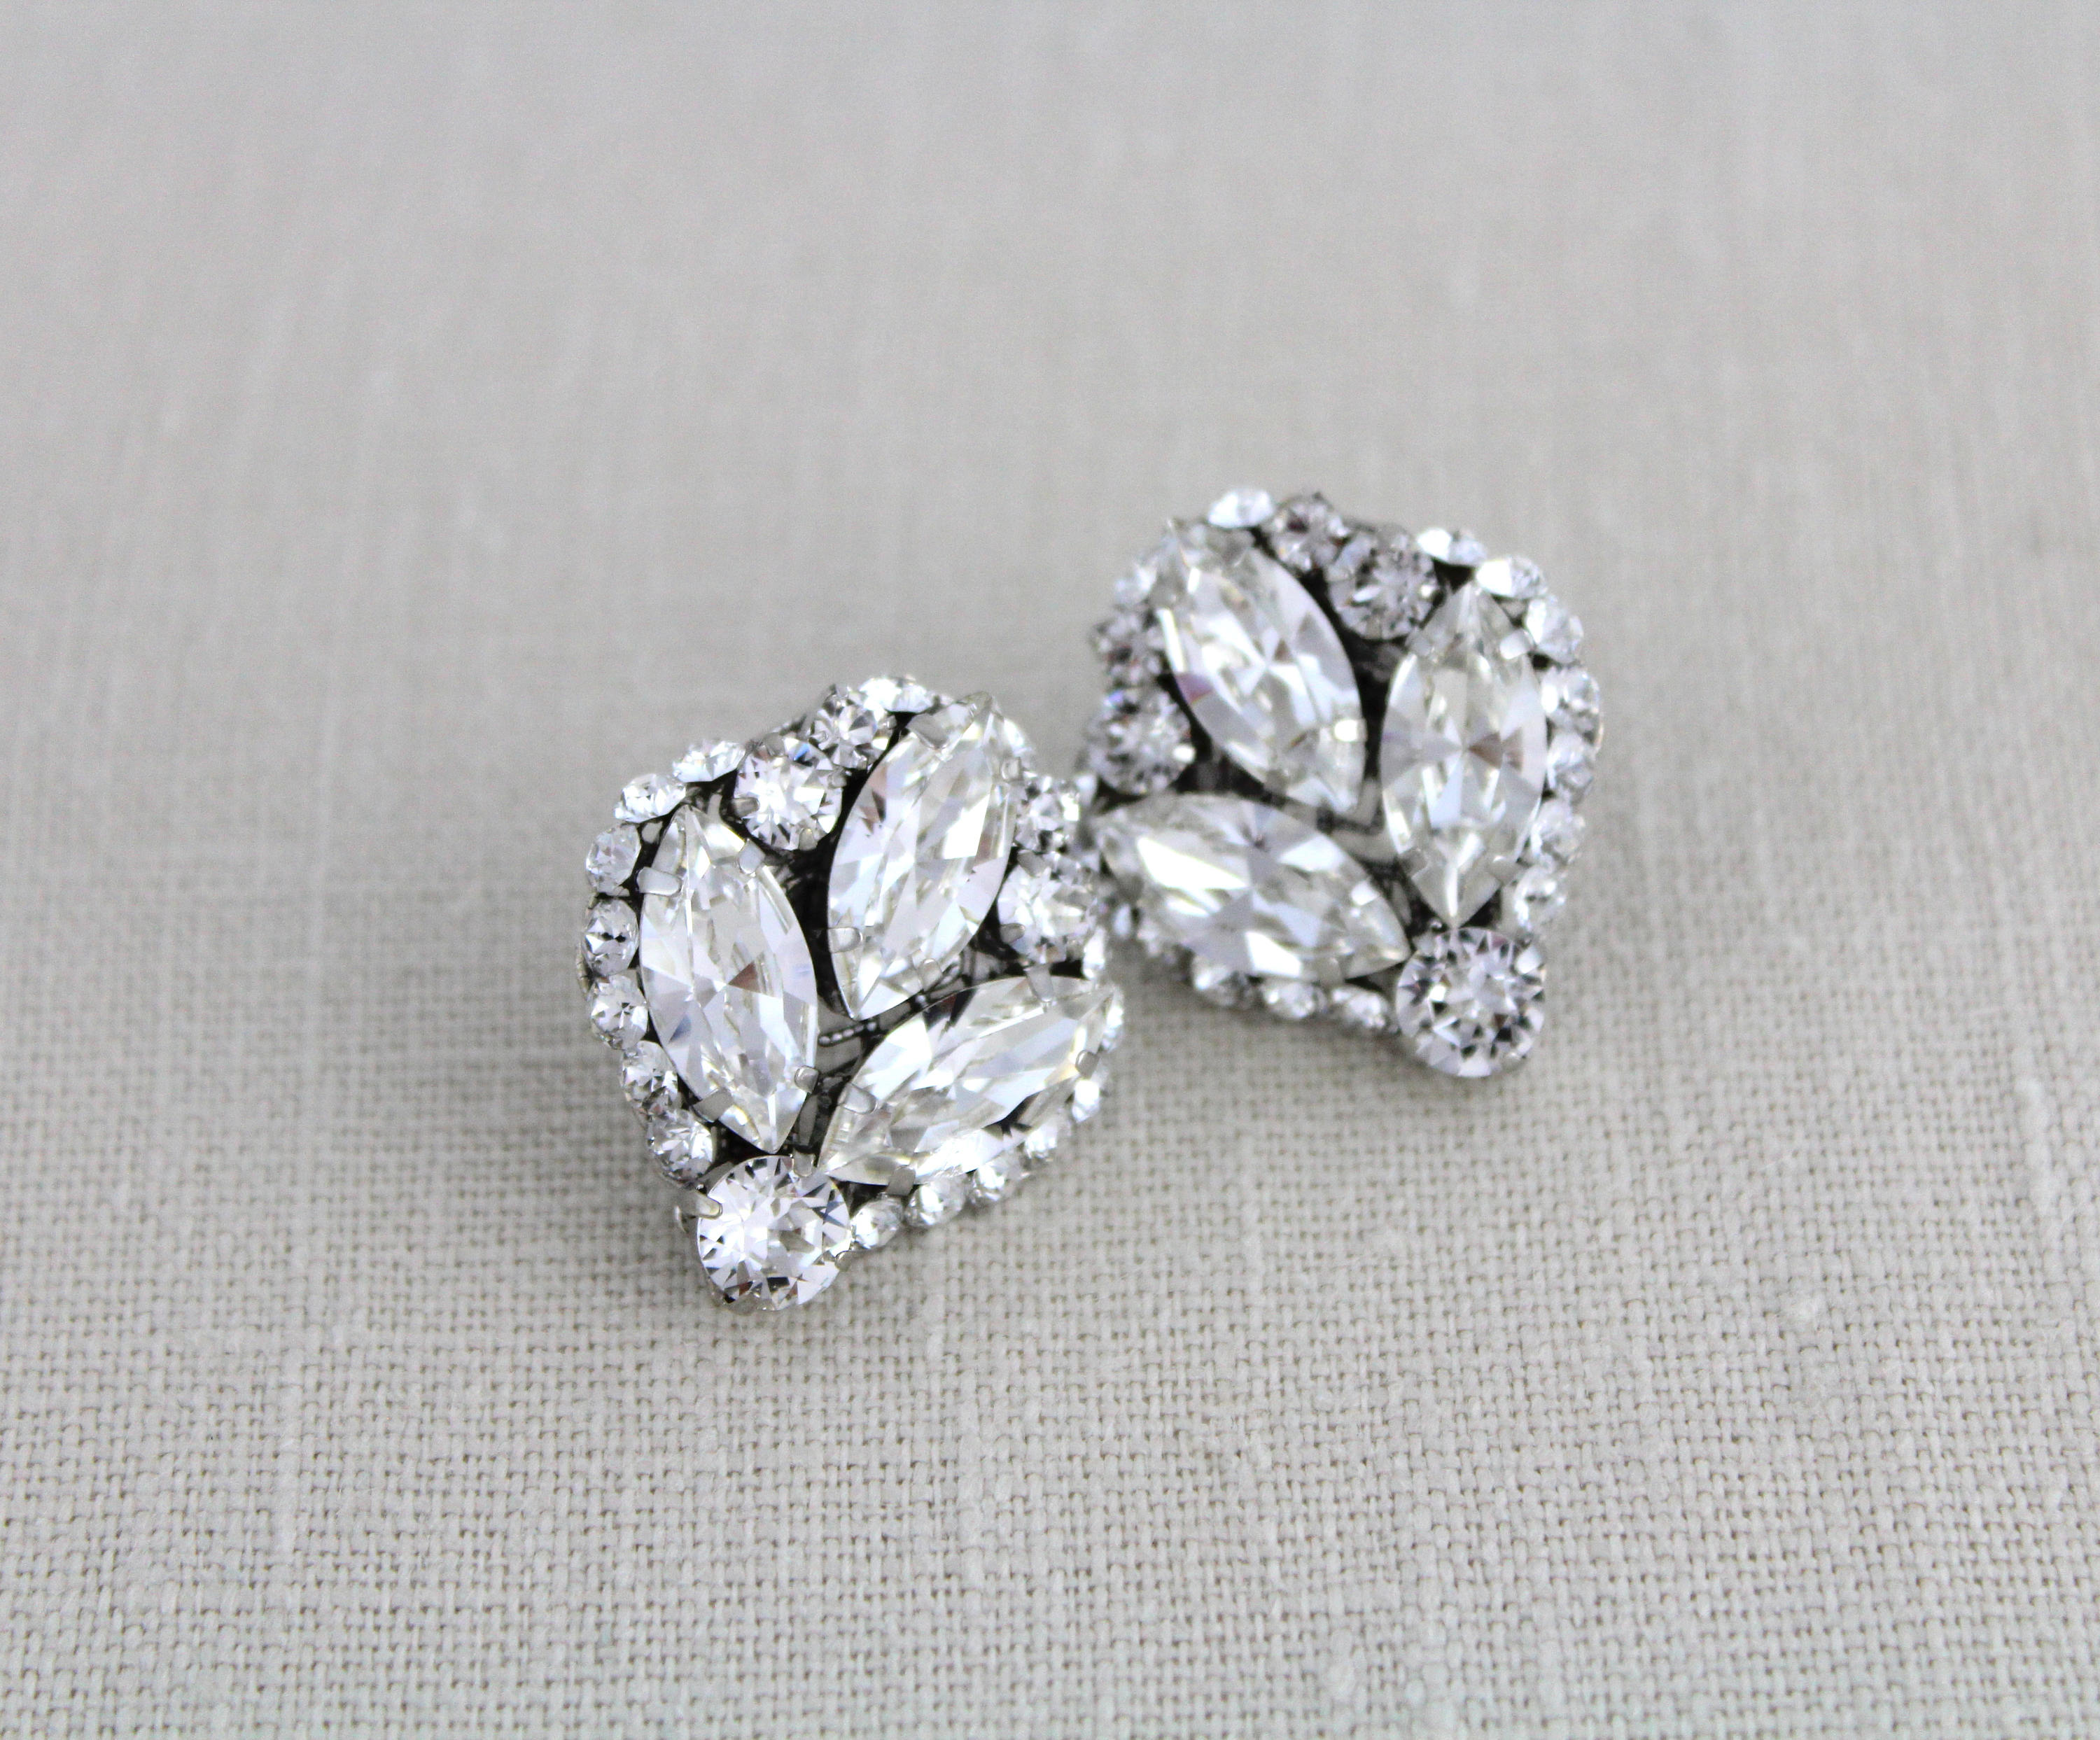 Crystal Bridal Earrings Rhinestone Wedding earrings Crystal